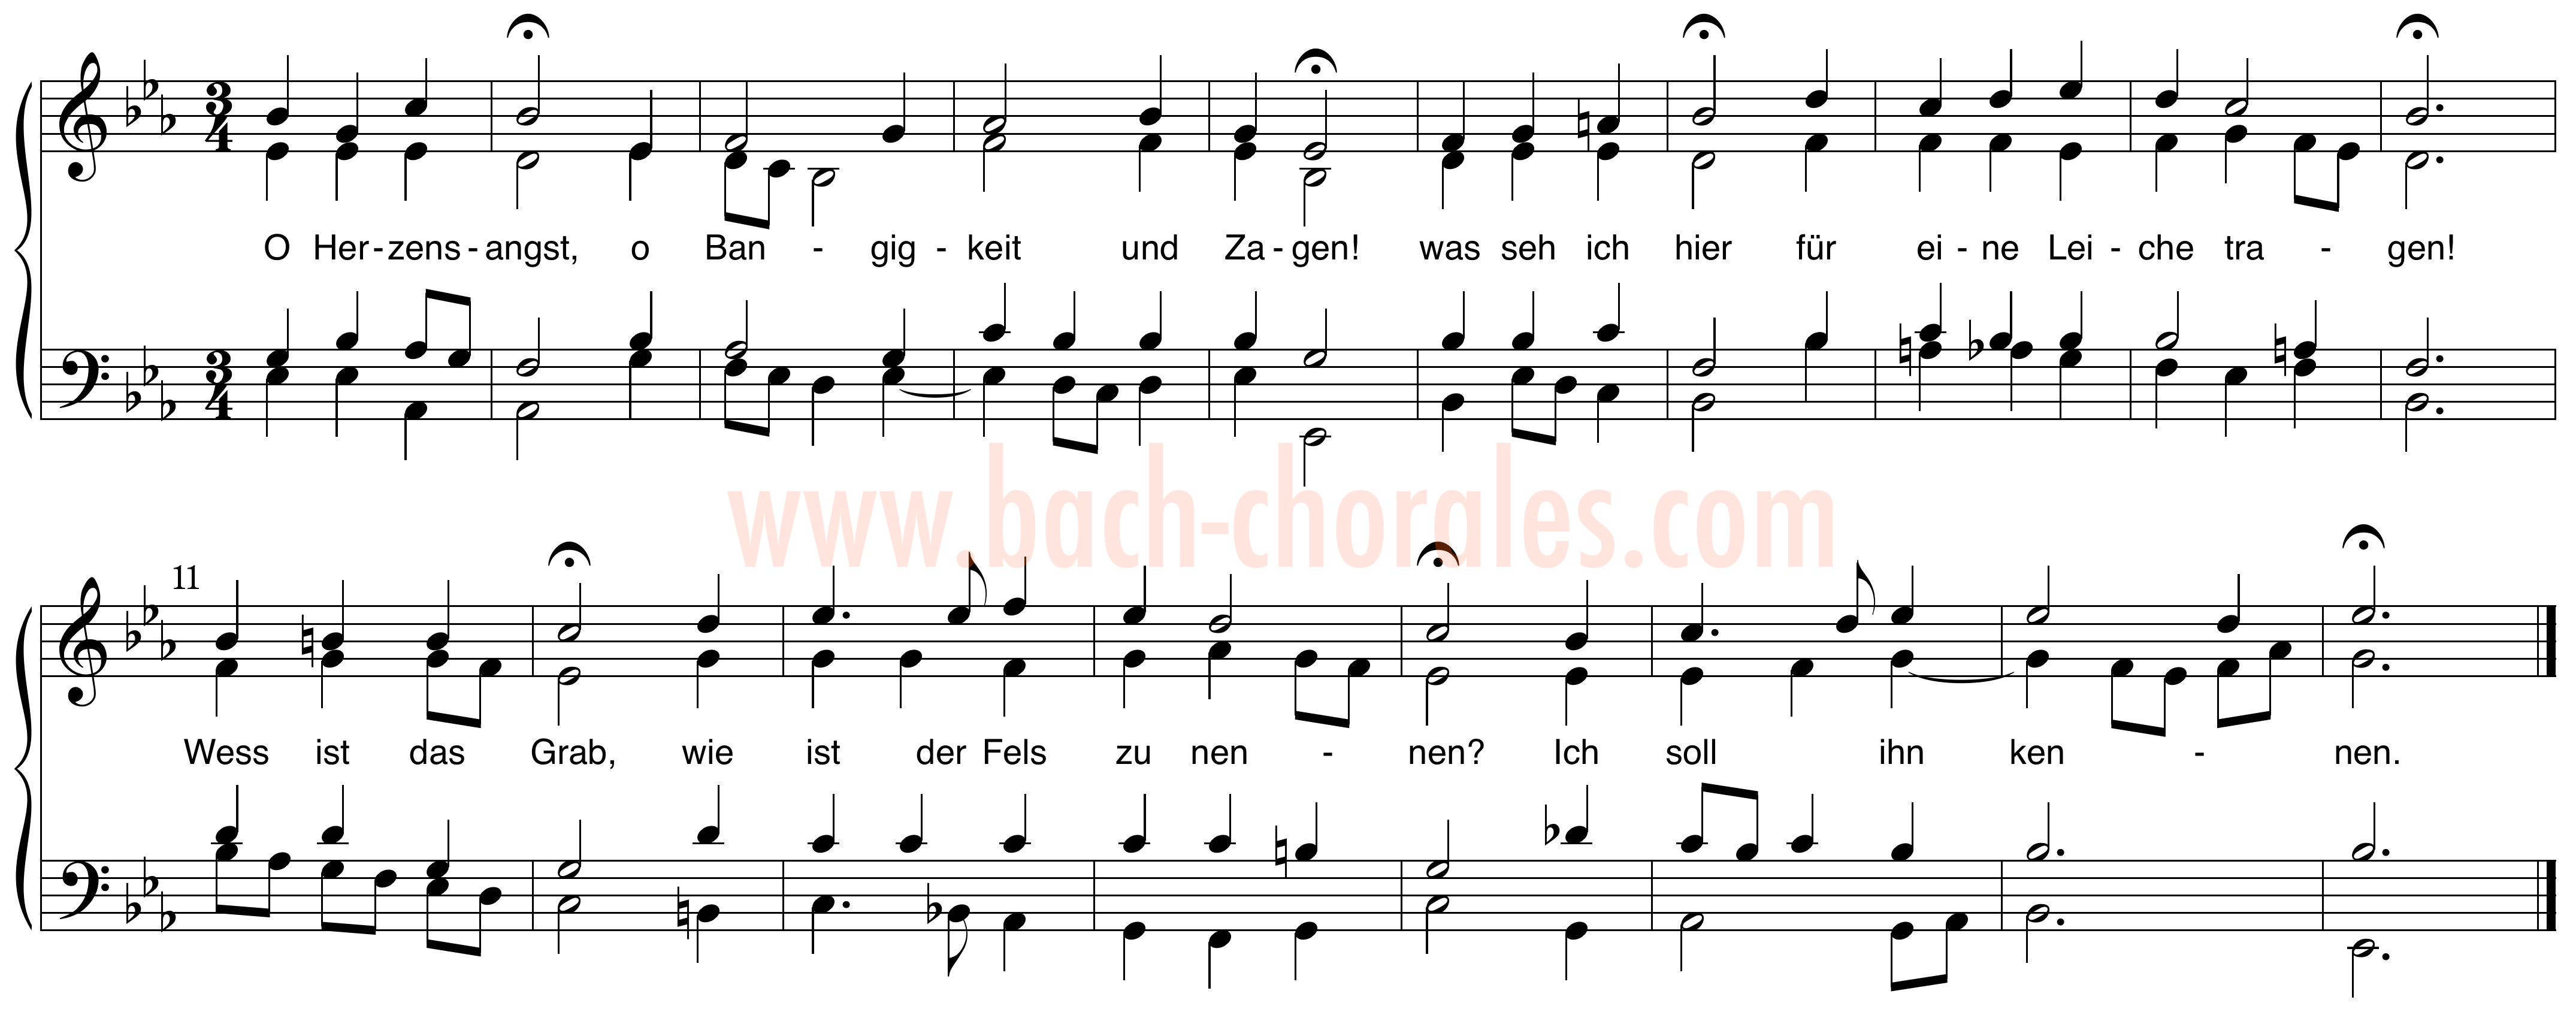 notenbeeld BWV 400 op https://www.bach-chorales.com/